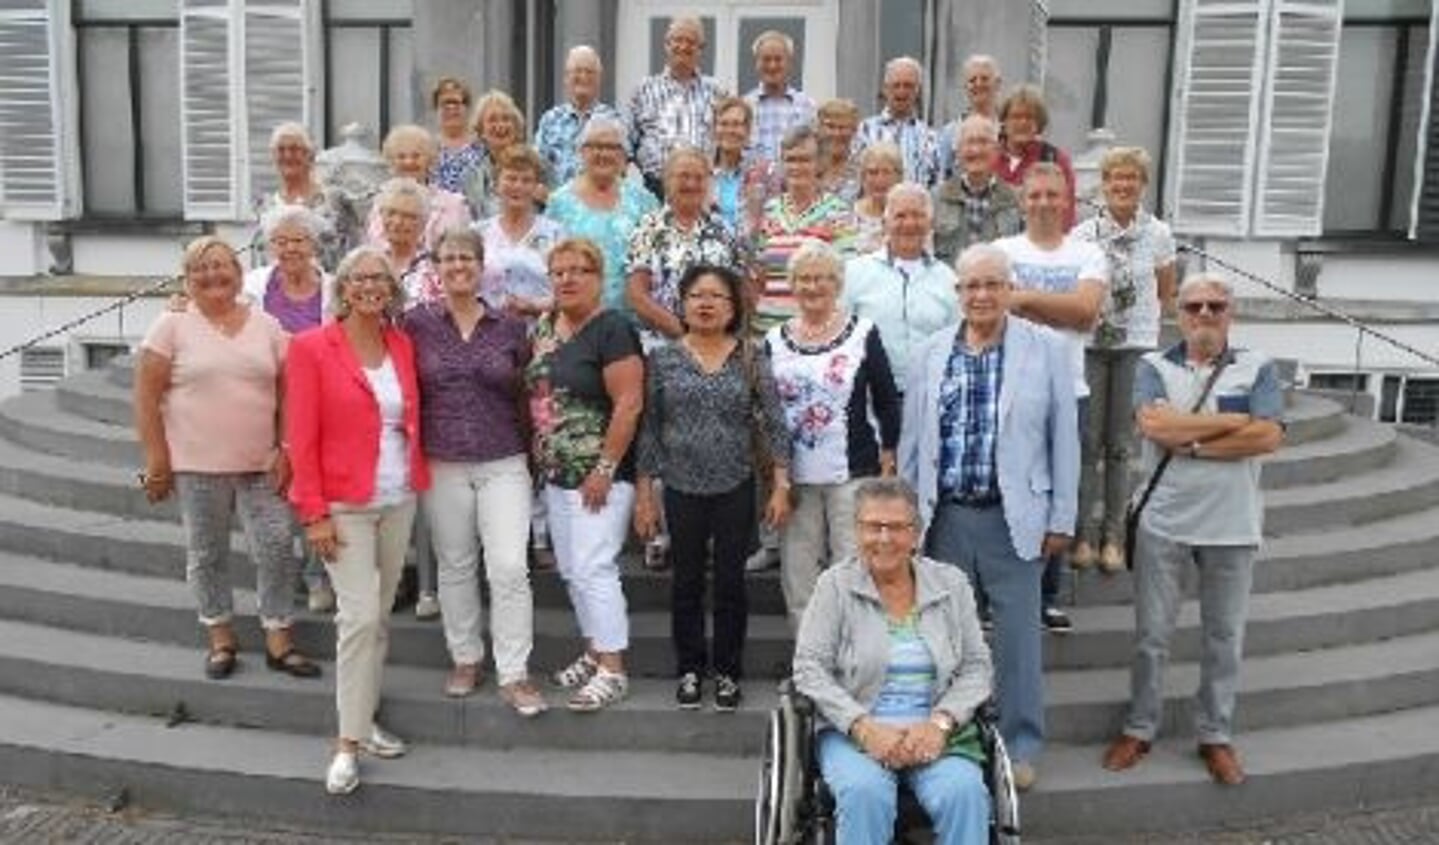 De leden van het koor op de trappen van paleis Soestdijk, enkele jaren terug.